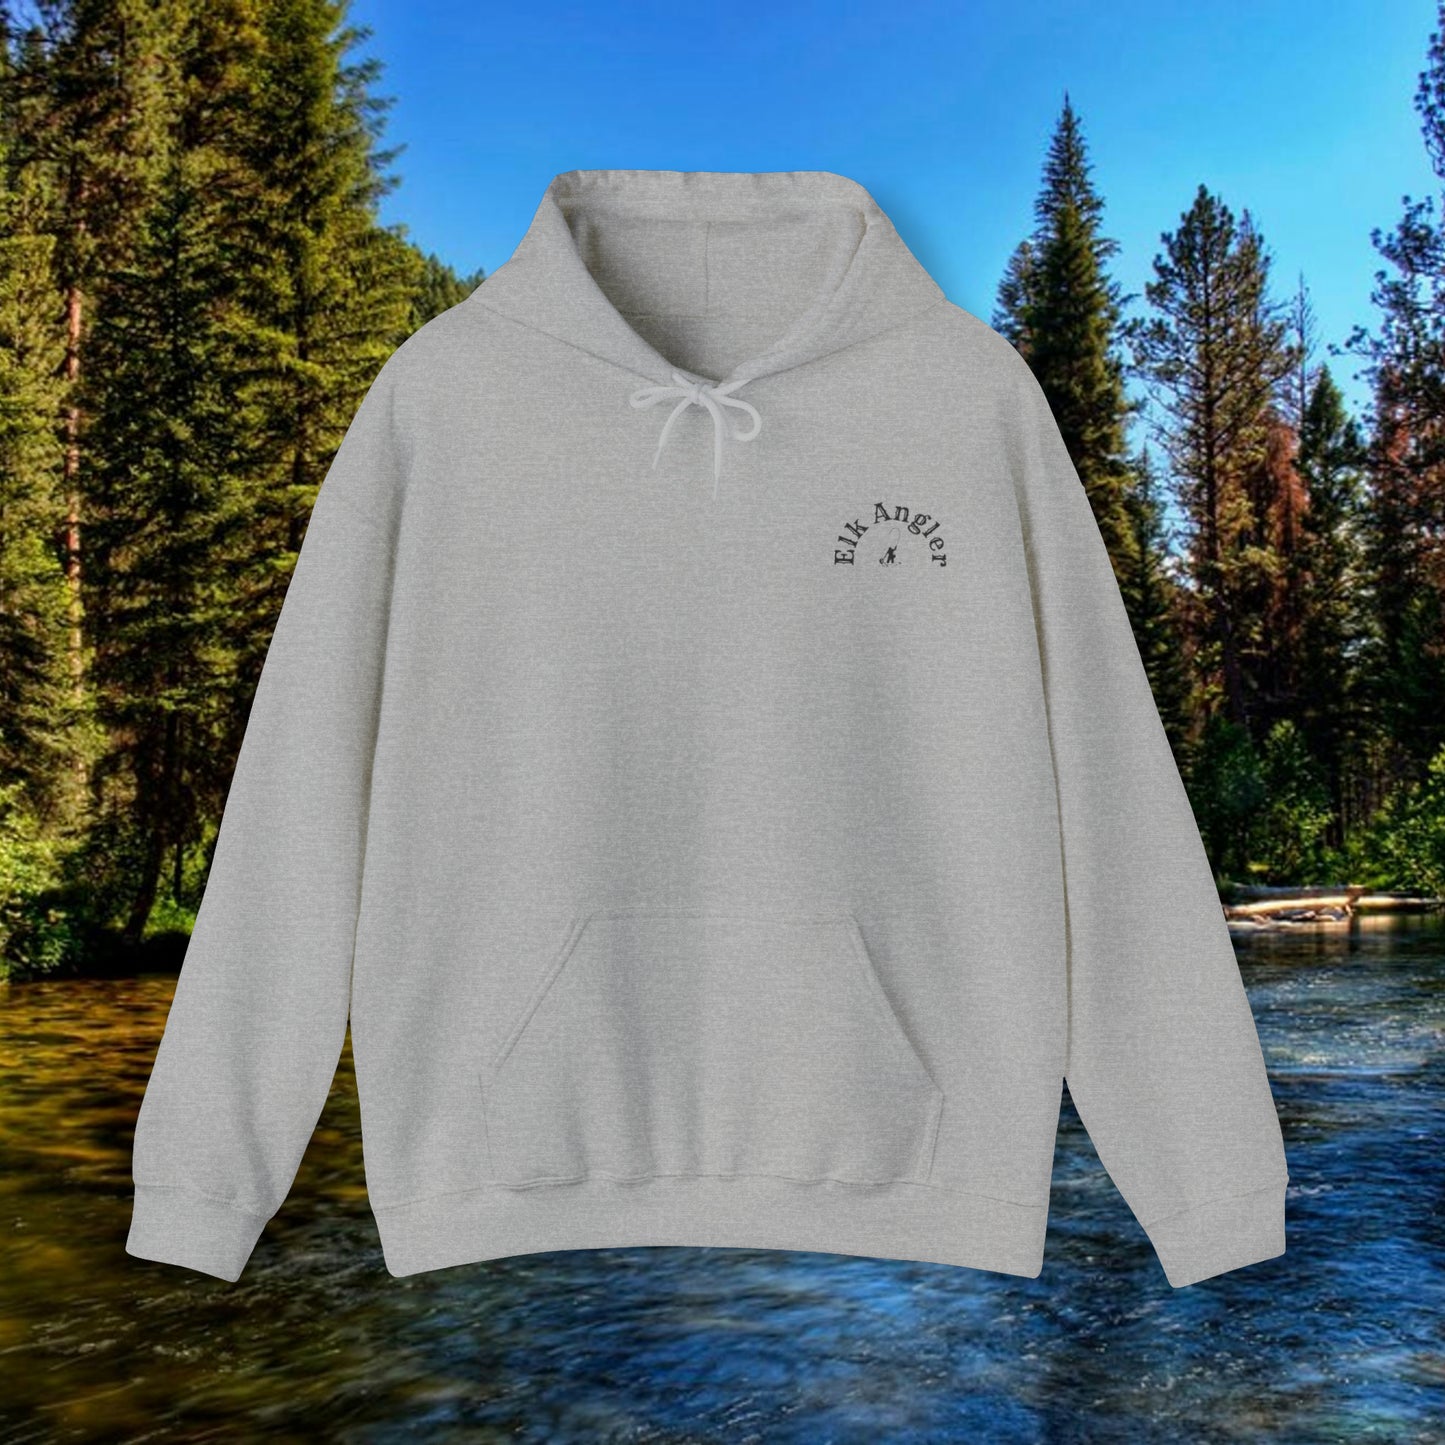 Elk Sweatshirt, Hunting Hoodie, Bull Elk Shirt,  Gift for Hunter